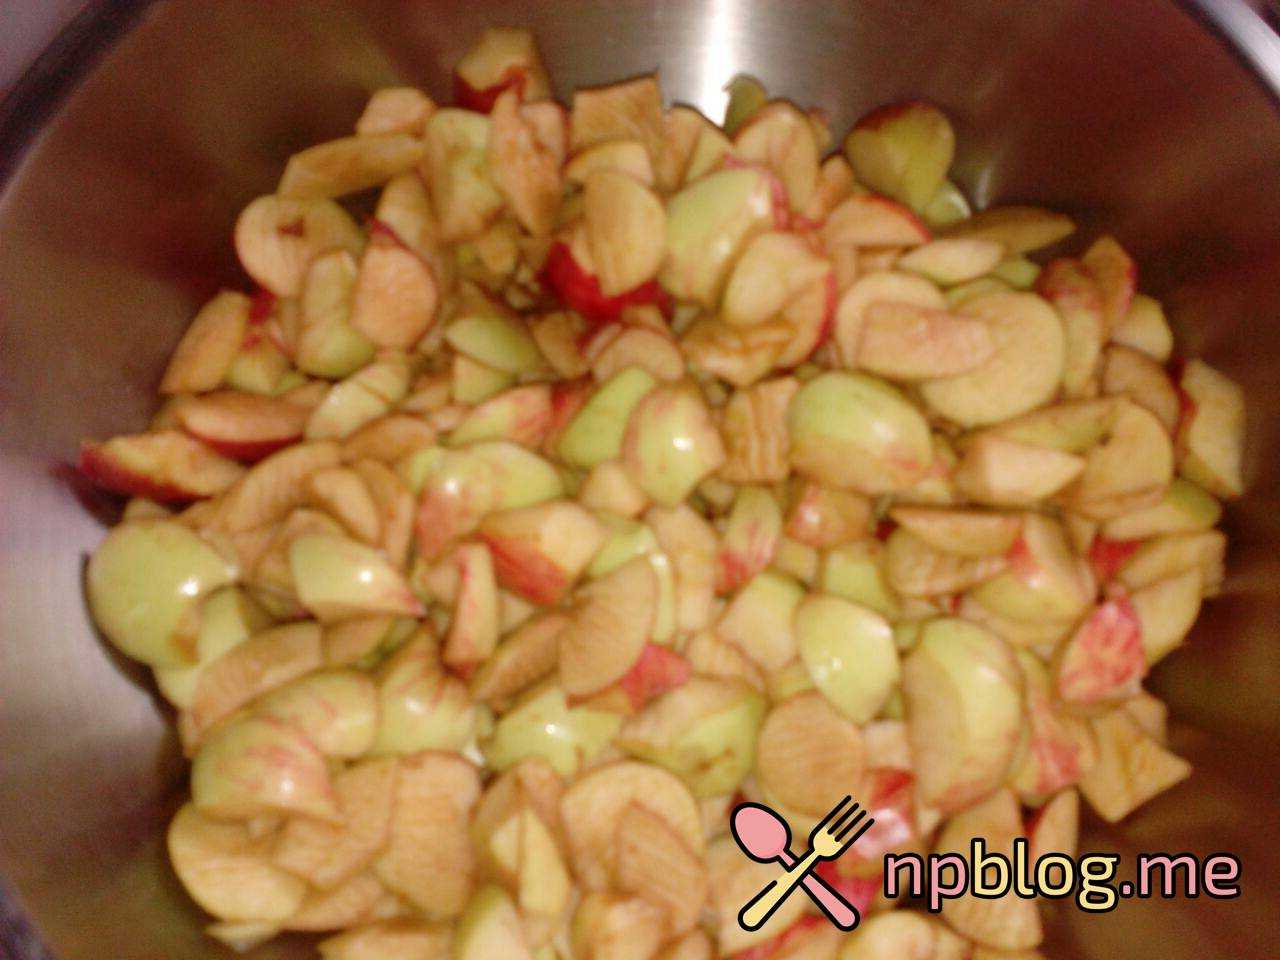 Рецепты приготовления варенья из яблок с черноплодной рябиной. Какие нужны ингредиенты, как приготовить простой вариант лакомства. Как правильно сохранить заготовку.